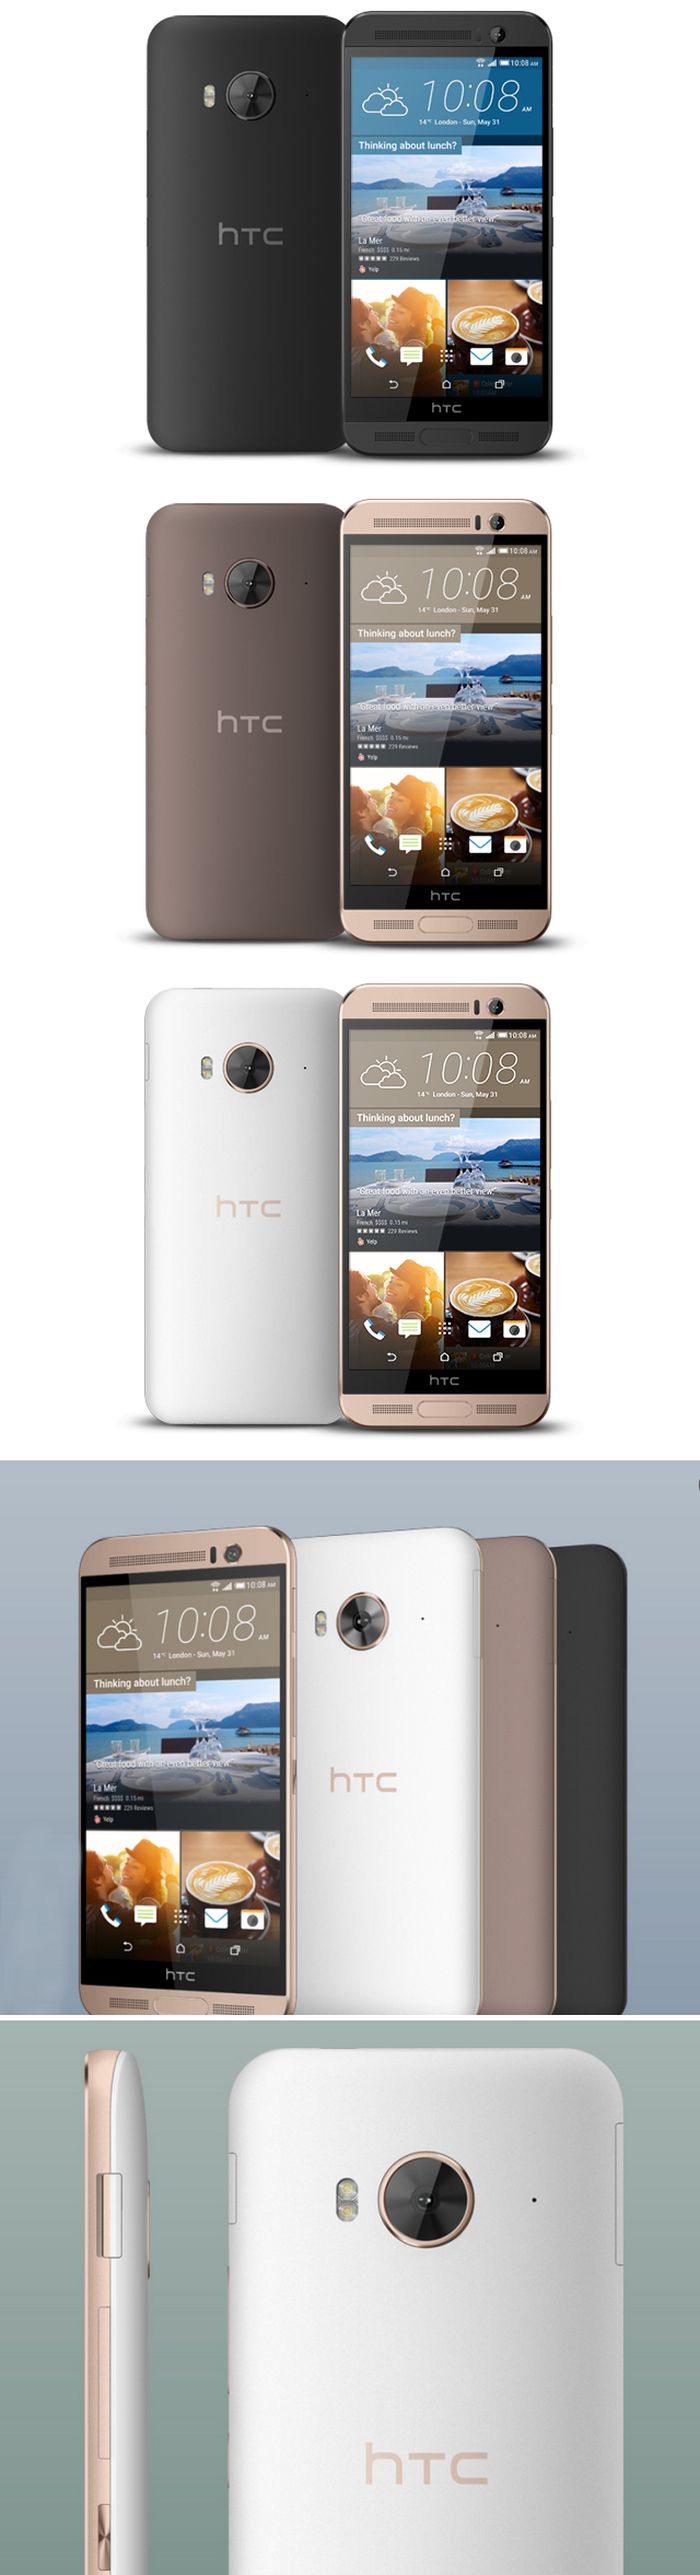 HTC One ME: újabb tajvani csúcs